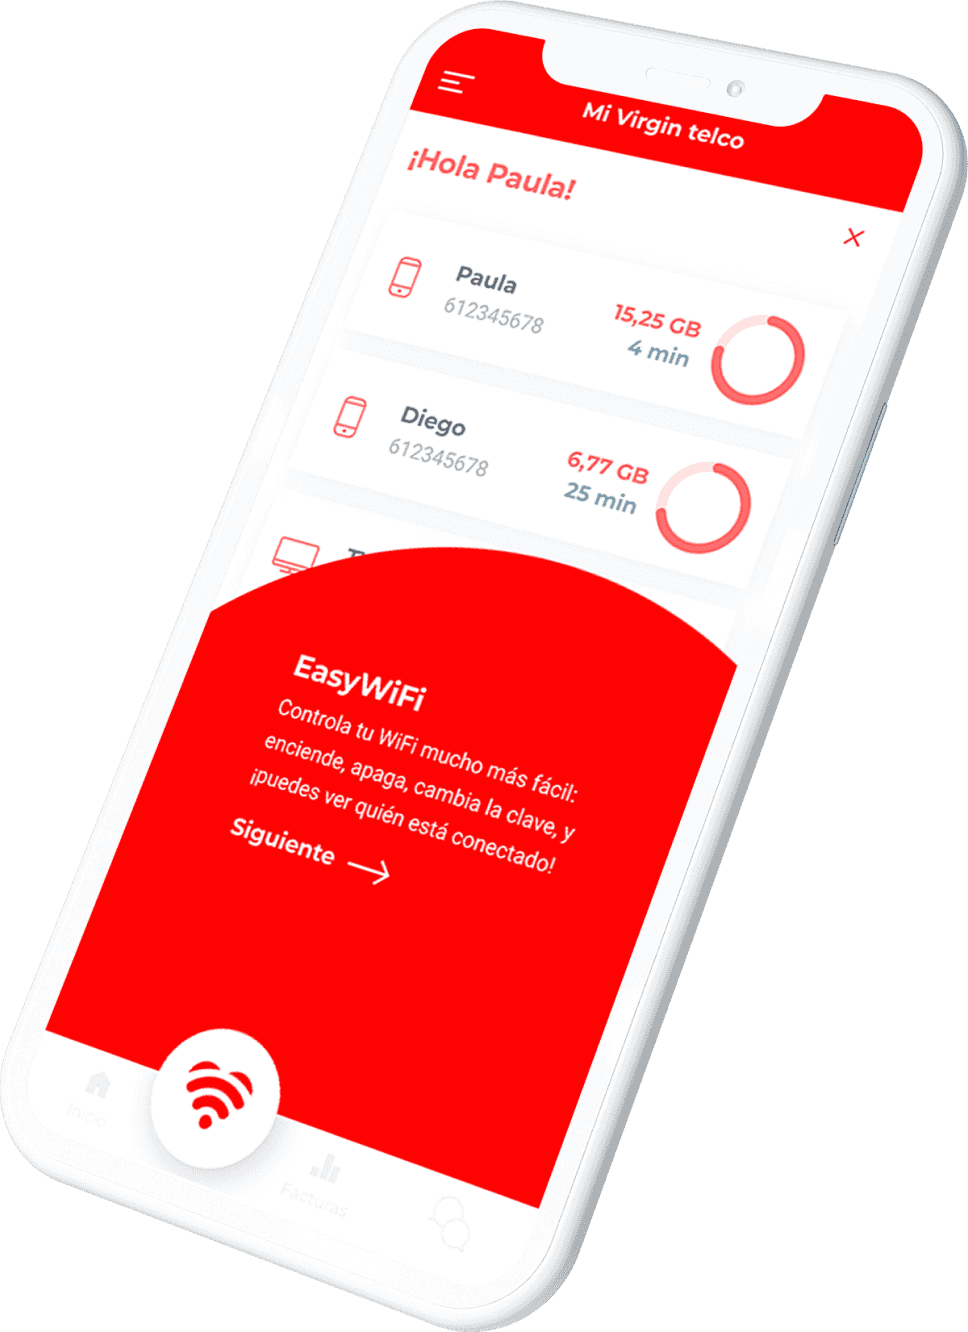 Virgin Telco mockup easy wifi mobile